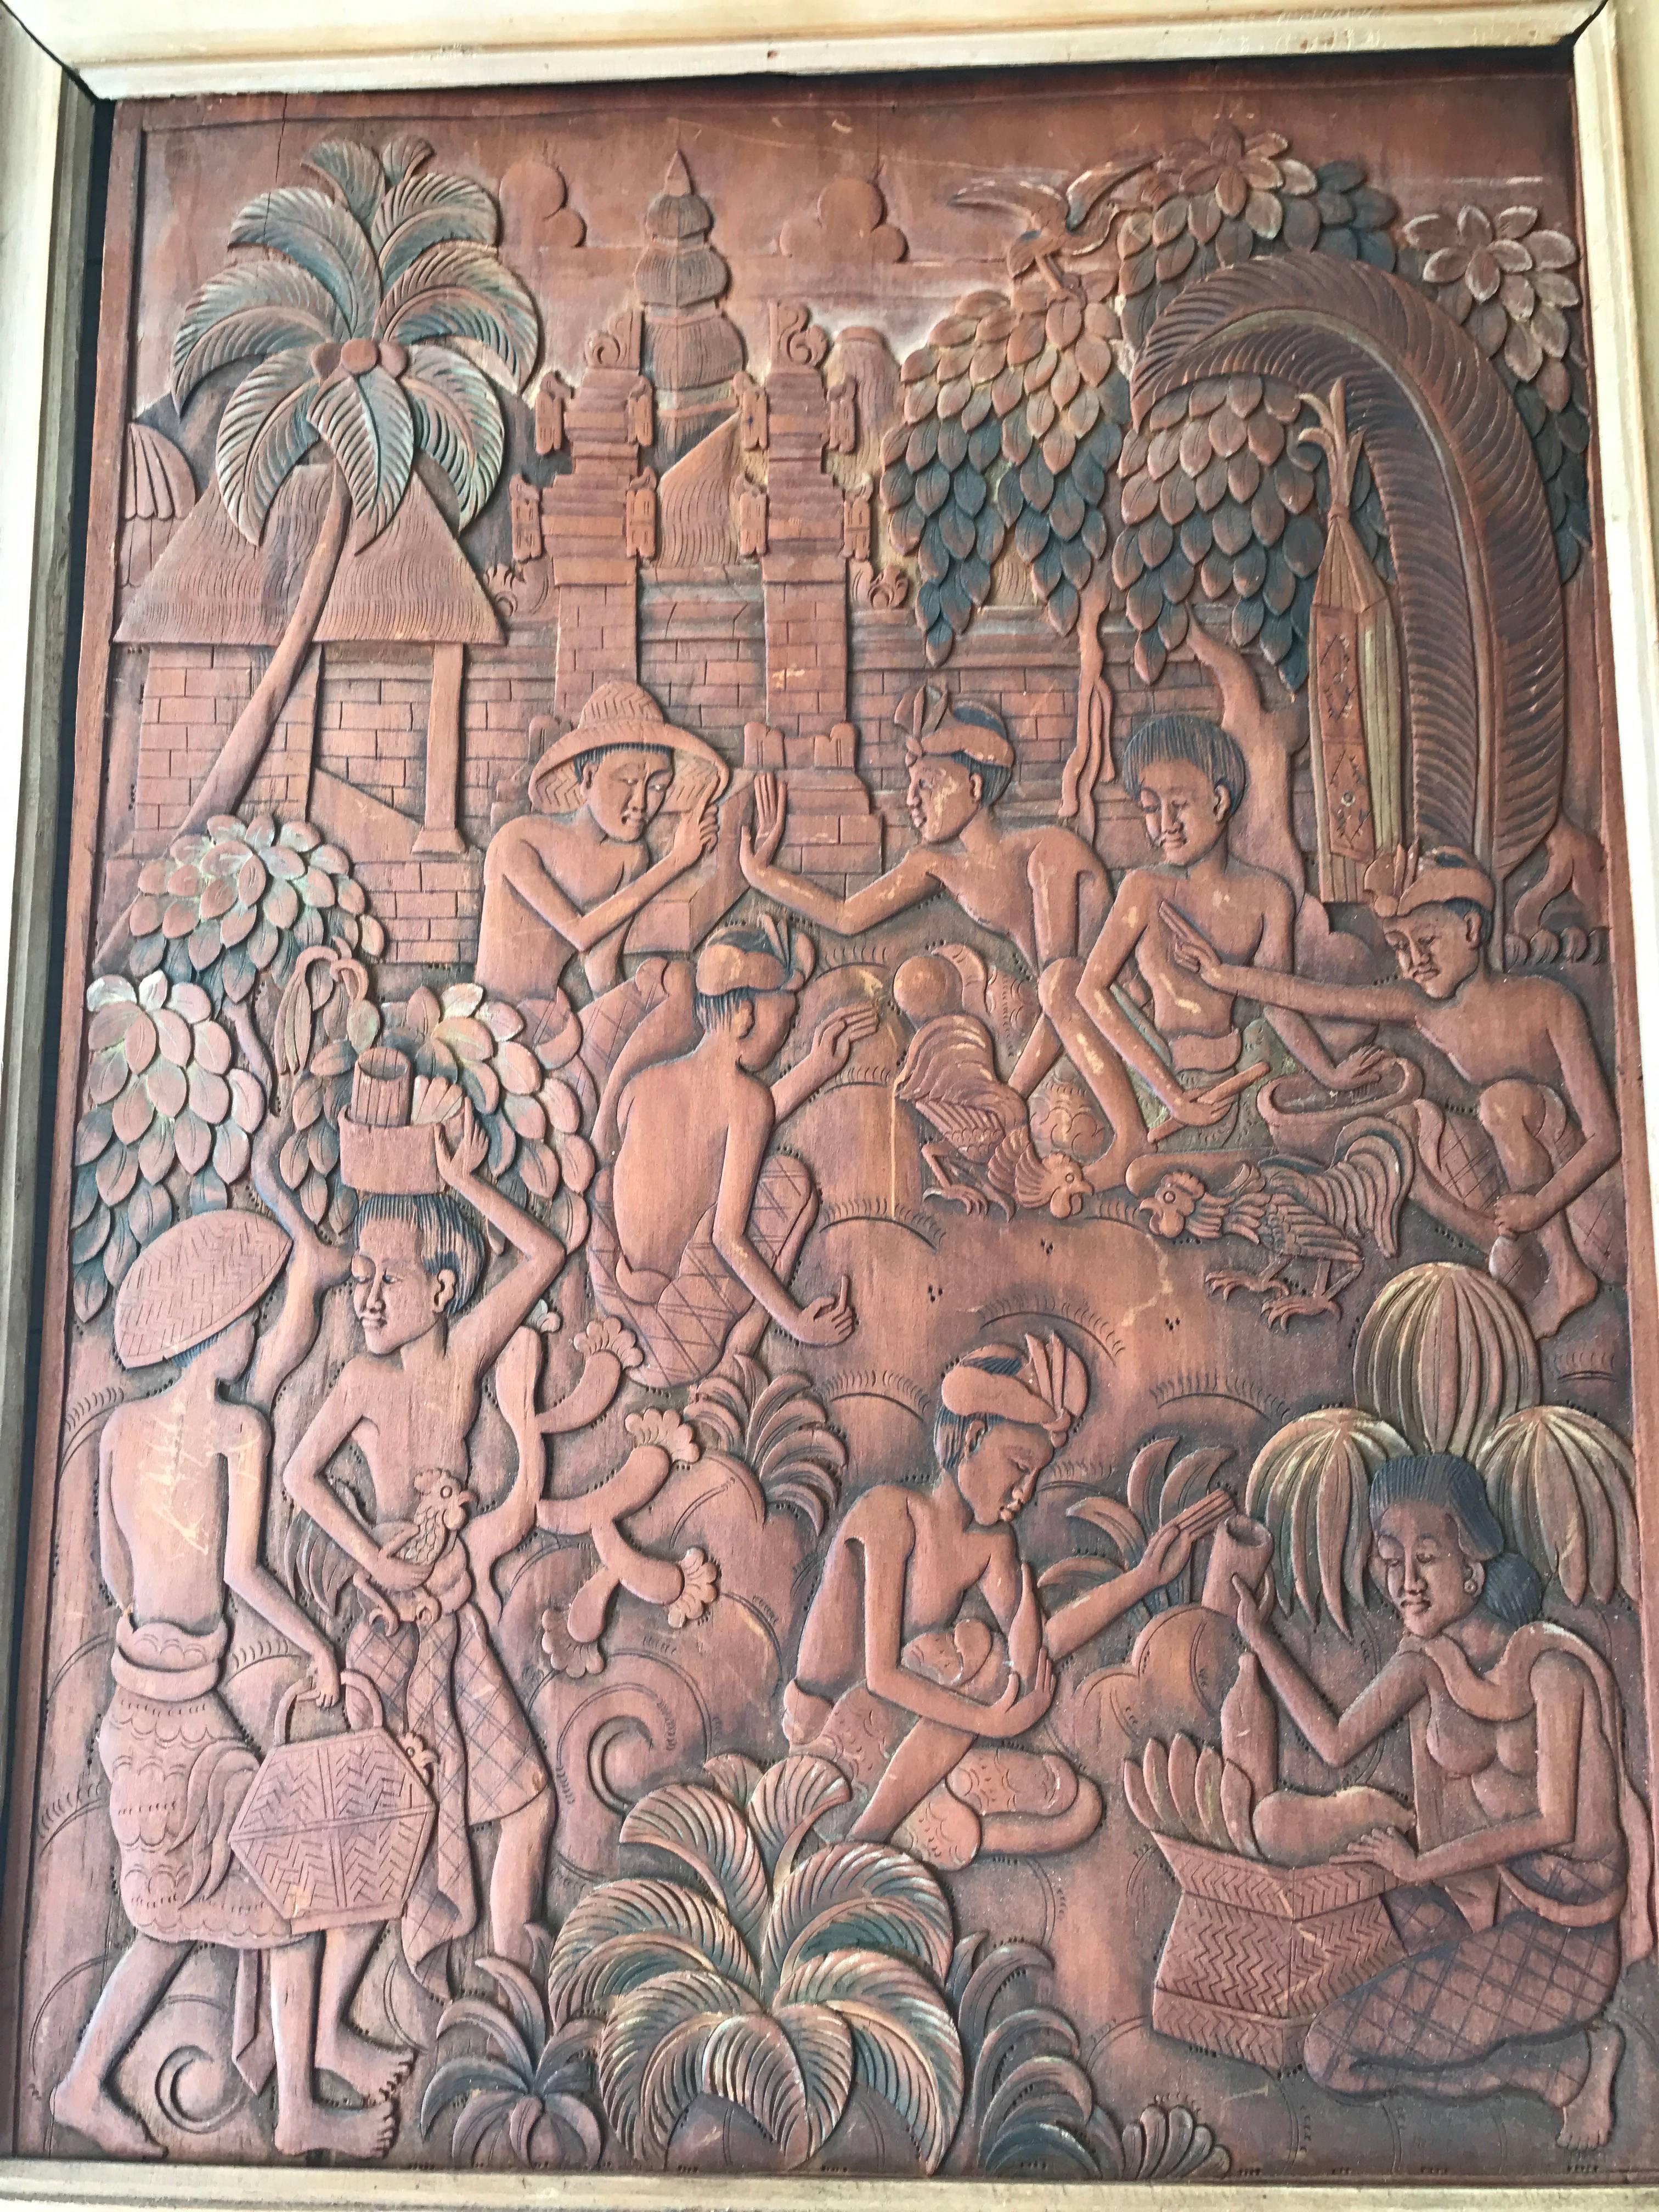 Panneau mural sculpté de qualité muséale dans un cadre en bois.

Les combats de coqs sont une forme populaire de divertissement local à Bali. Elles sont souvent organisées dans le cadre de cérémonies de purification visant à débarrasser un village